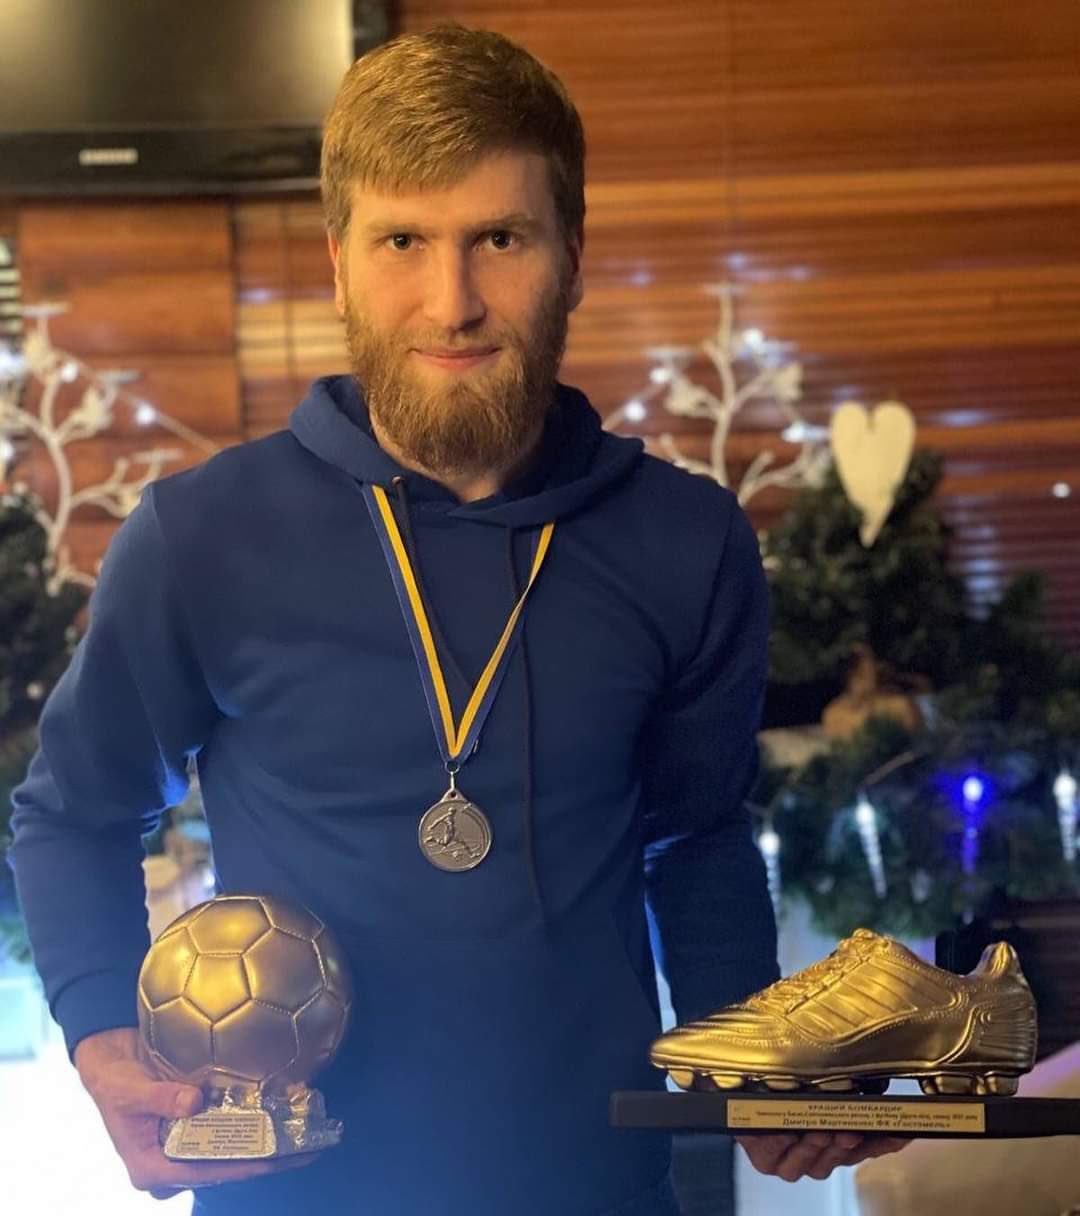 Error ArbitraI on X: "Dima Martynenko, jugador ucraniano y goleador de la liga amateur de Kiev, falleció hoy junto a su madre luego de que una bomba fuera lanzada hacia su casa.